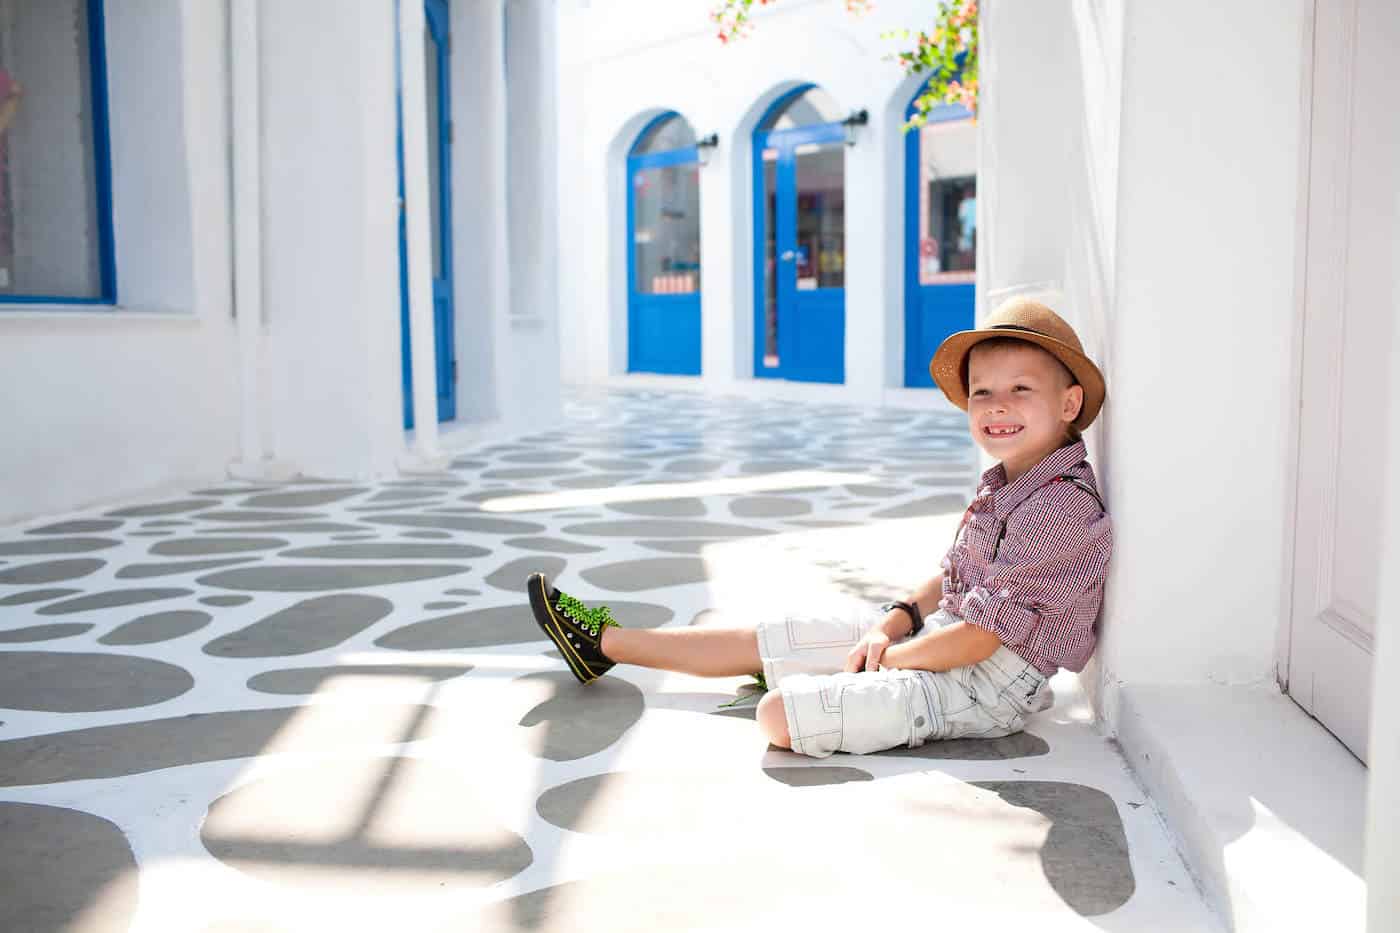 little boy greek city street